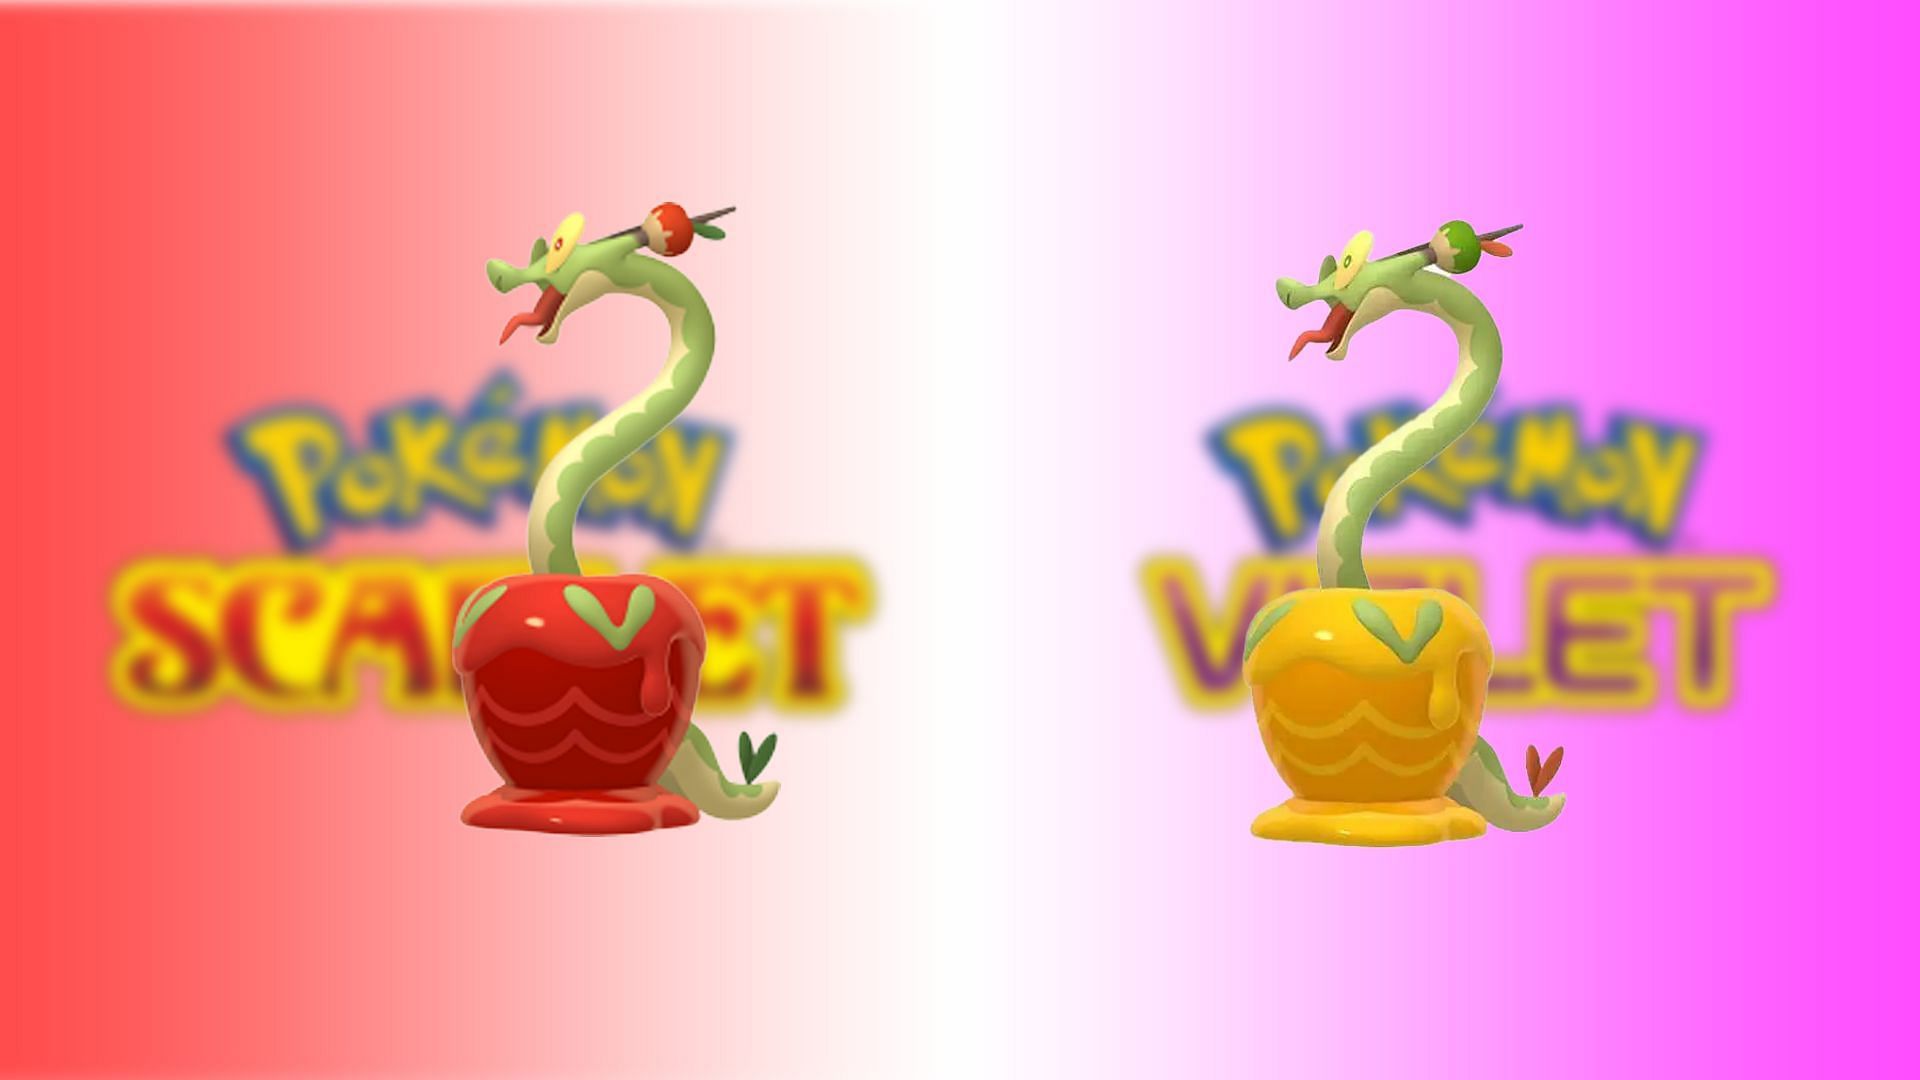 Shiny Hydrapple and Hydrapple (Image via The Pokemon Company)